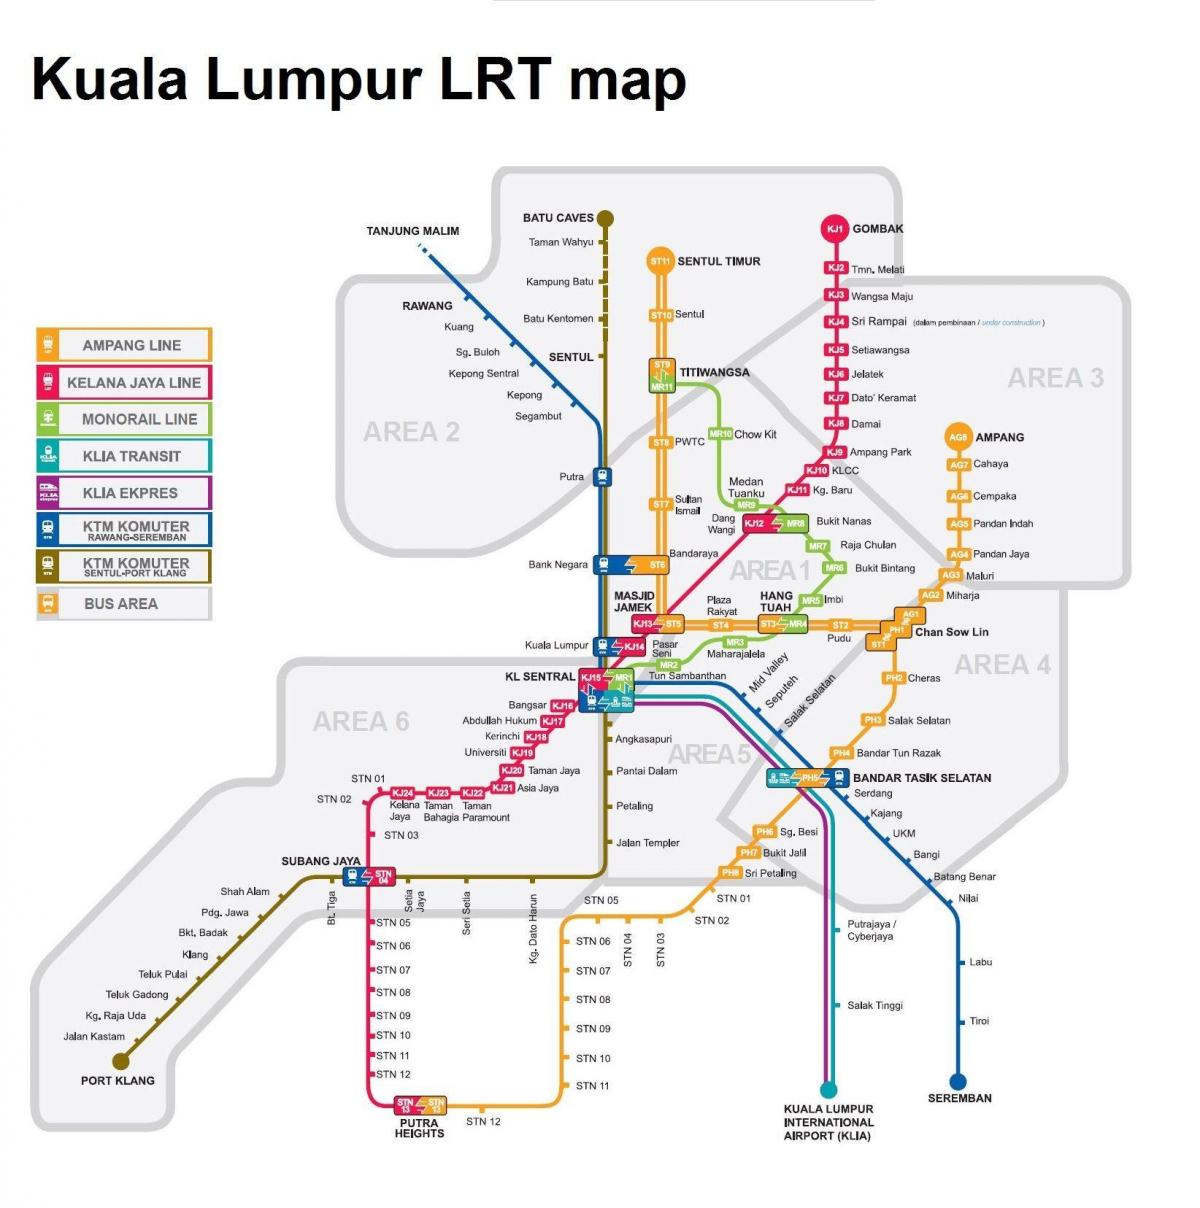 LRT քարտեզ Մալայզիայի 2016